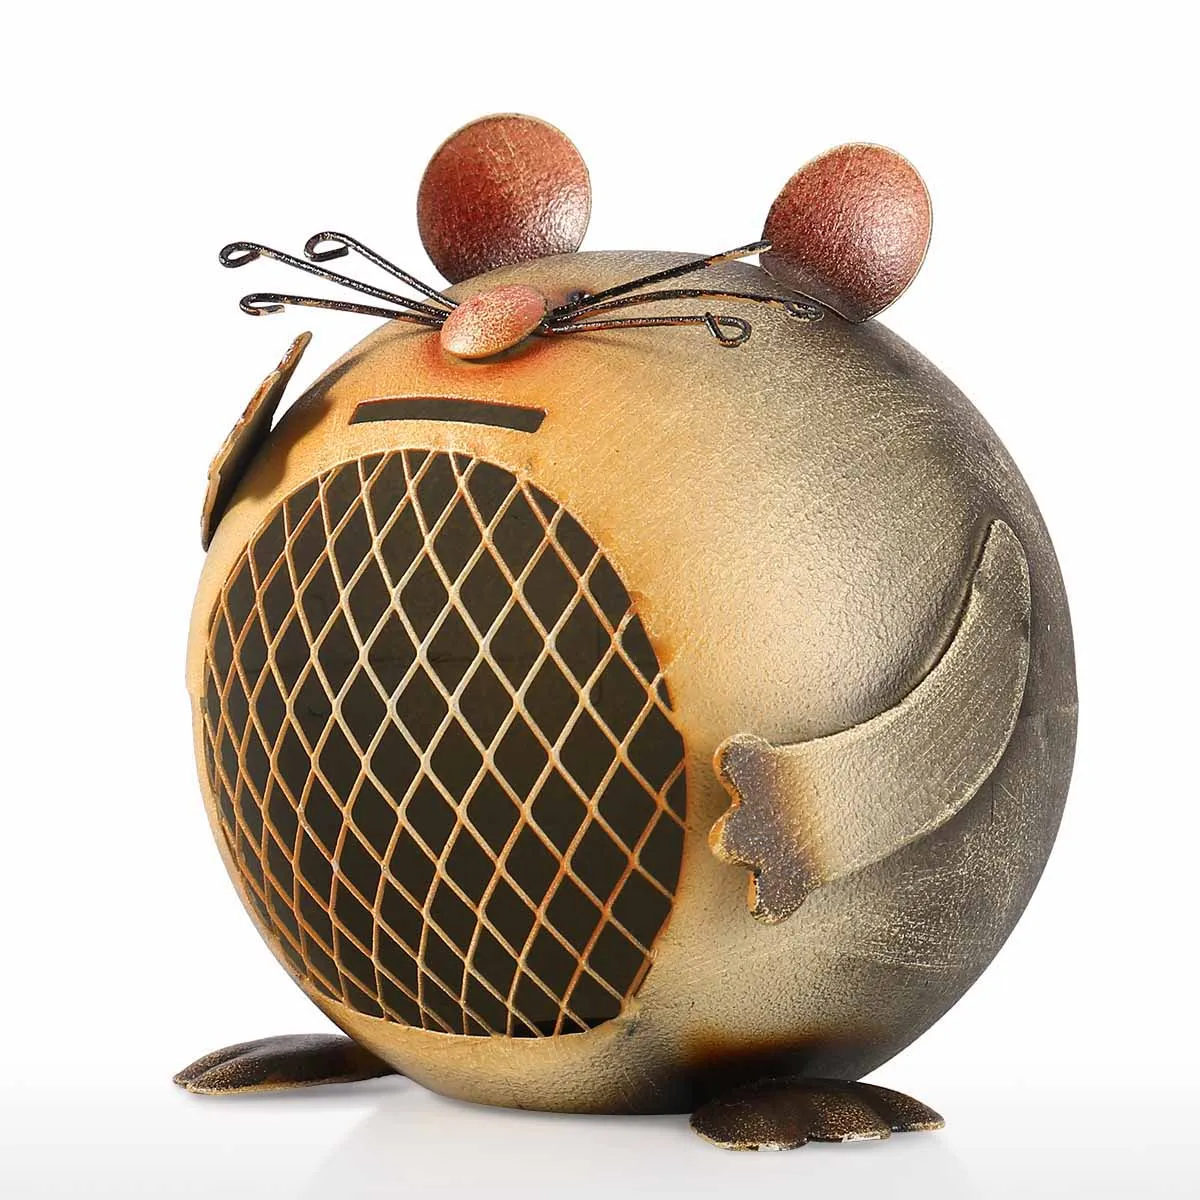 Tooarts монетница в форме мышки Милая монета с изображением животного креативная копилка для животных домашняя декоративная железная скульптура подарок для детей